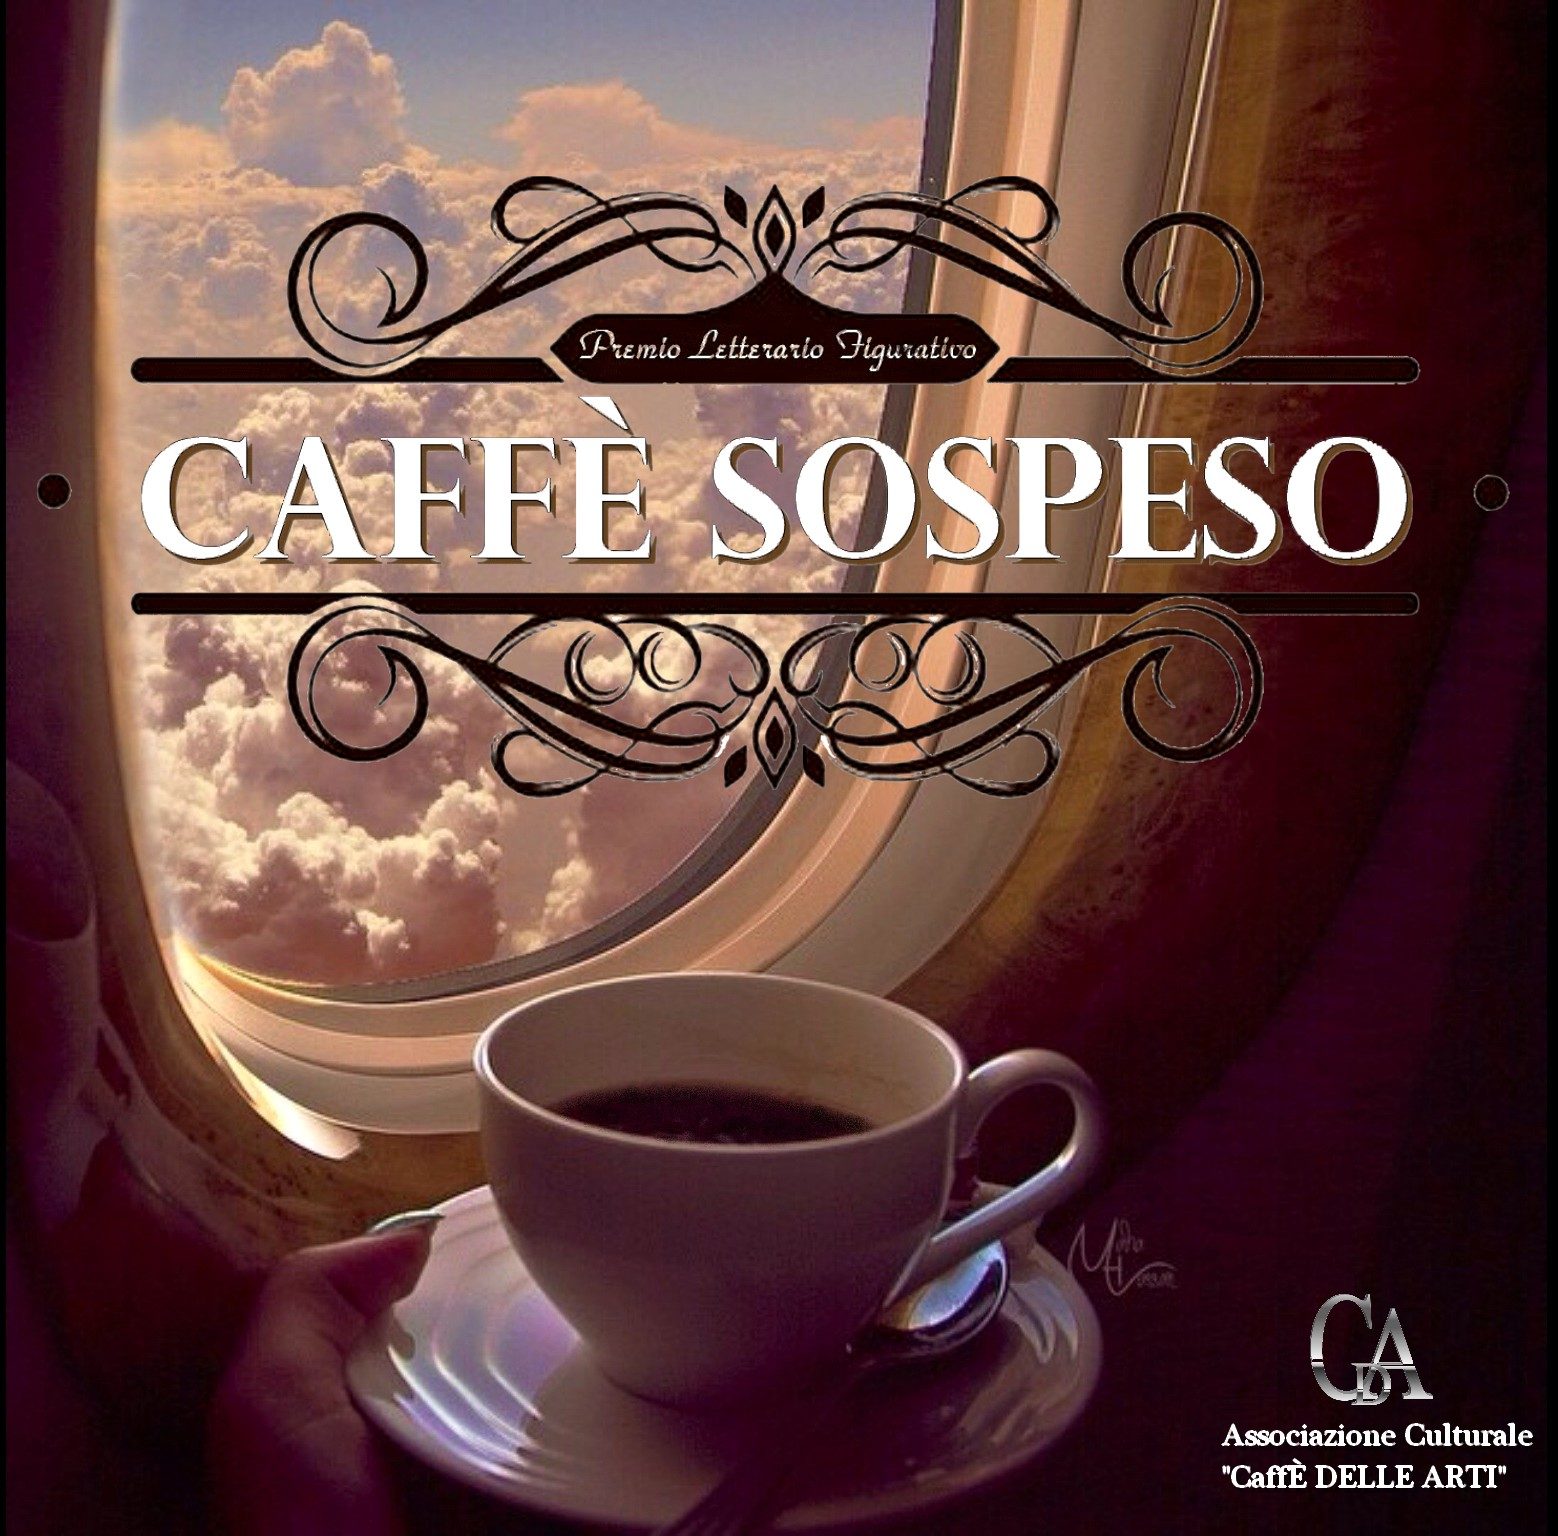 CAFFÈ SOSPESO – V edizione del Premio Letterario Figurativo “Caffè delle Arti”